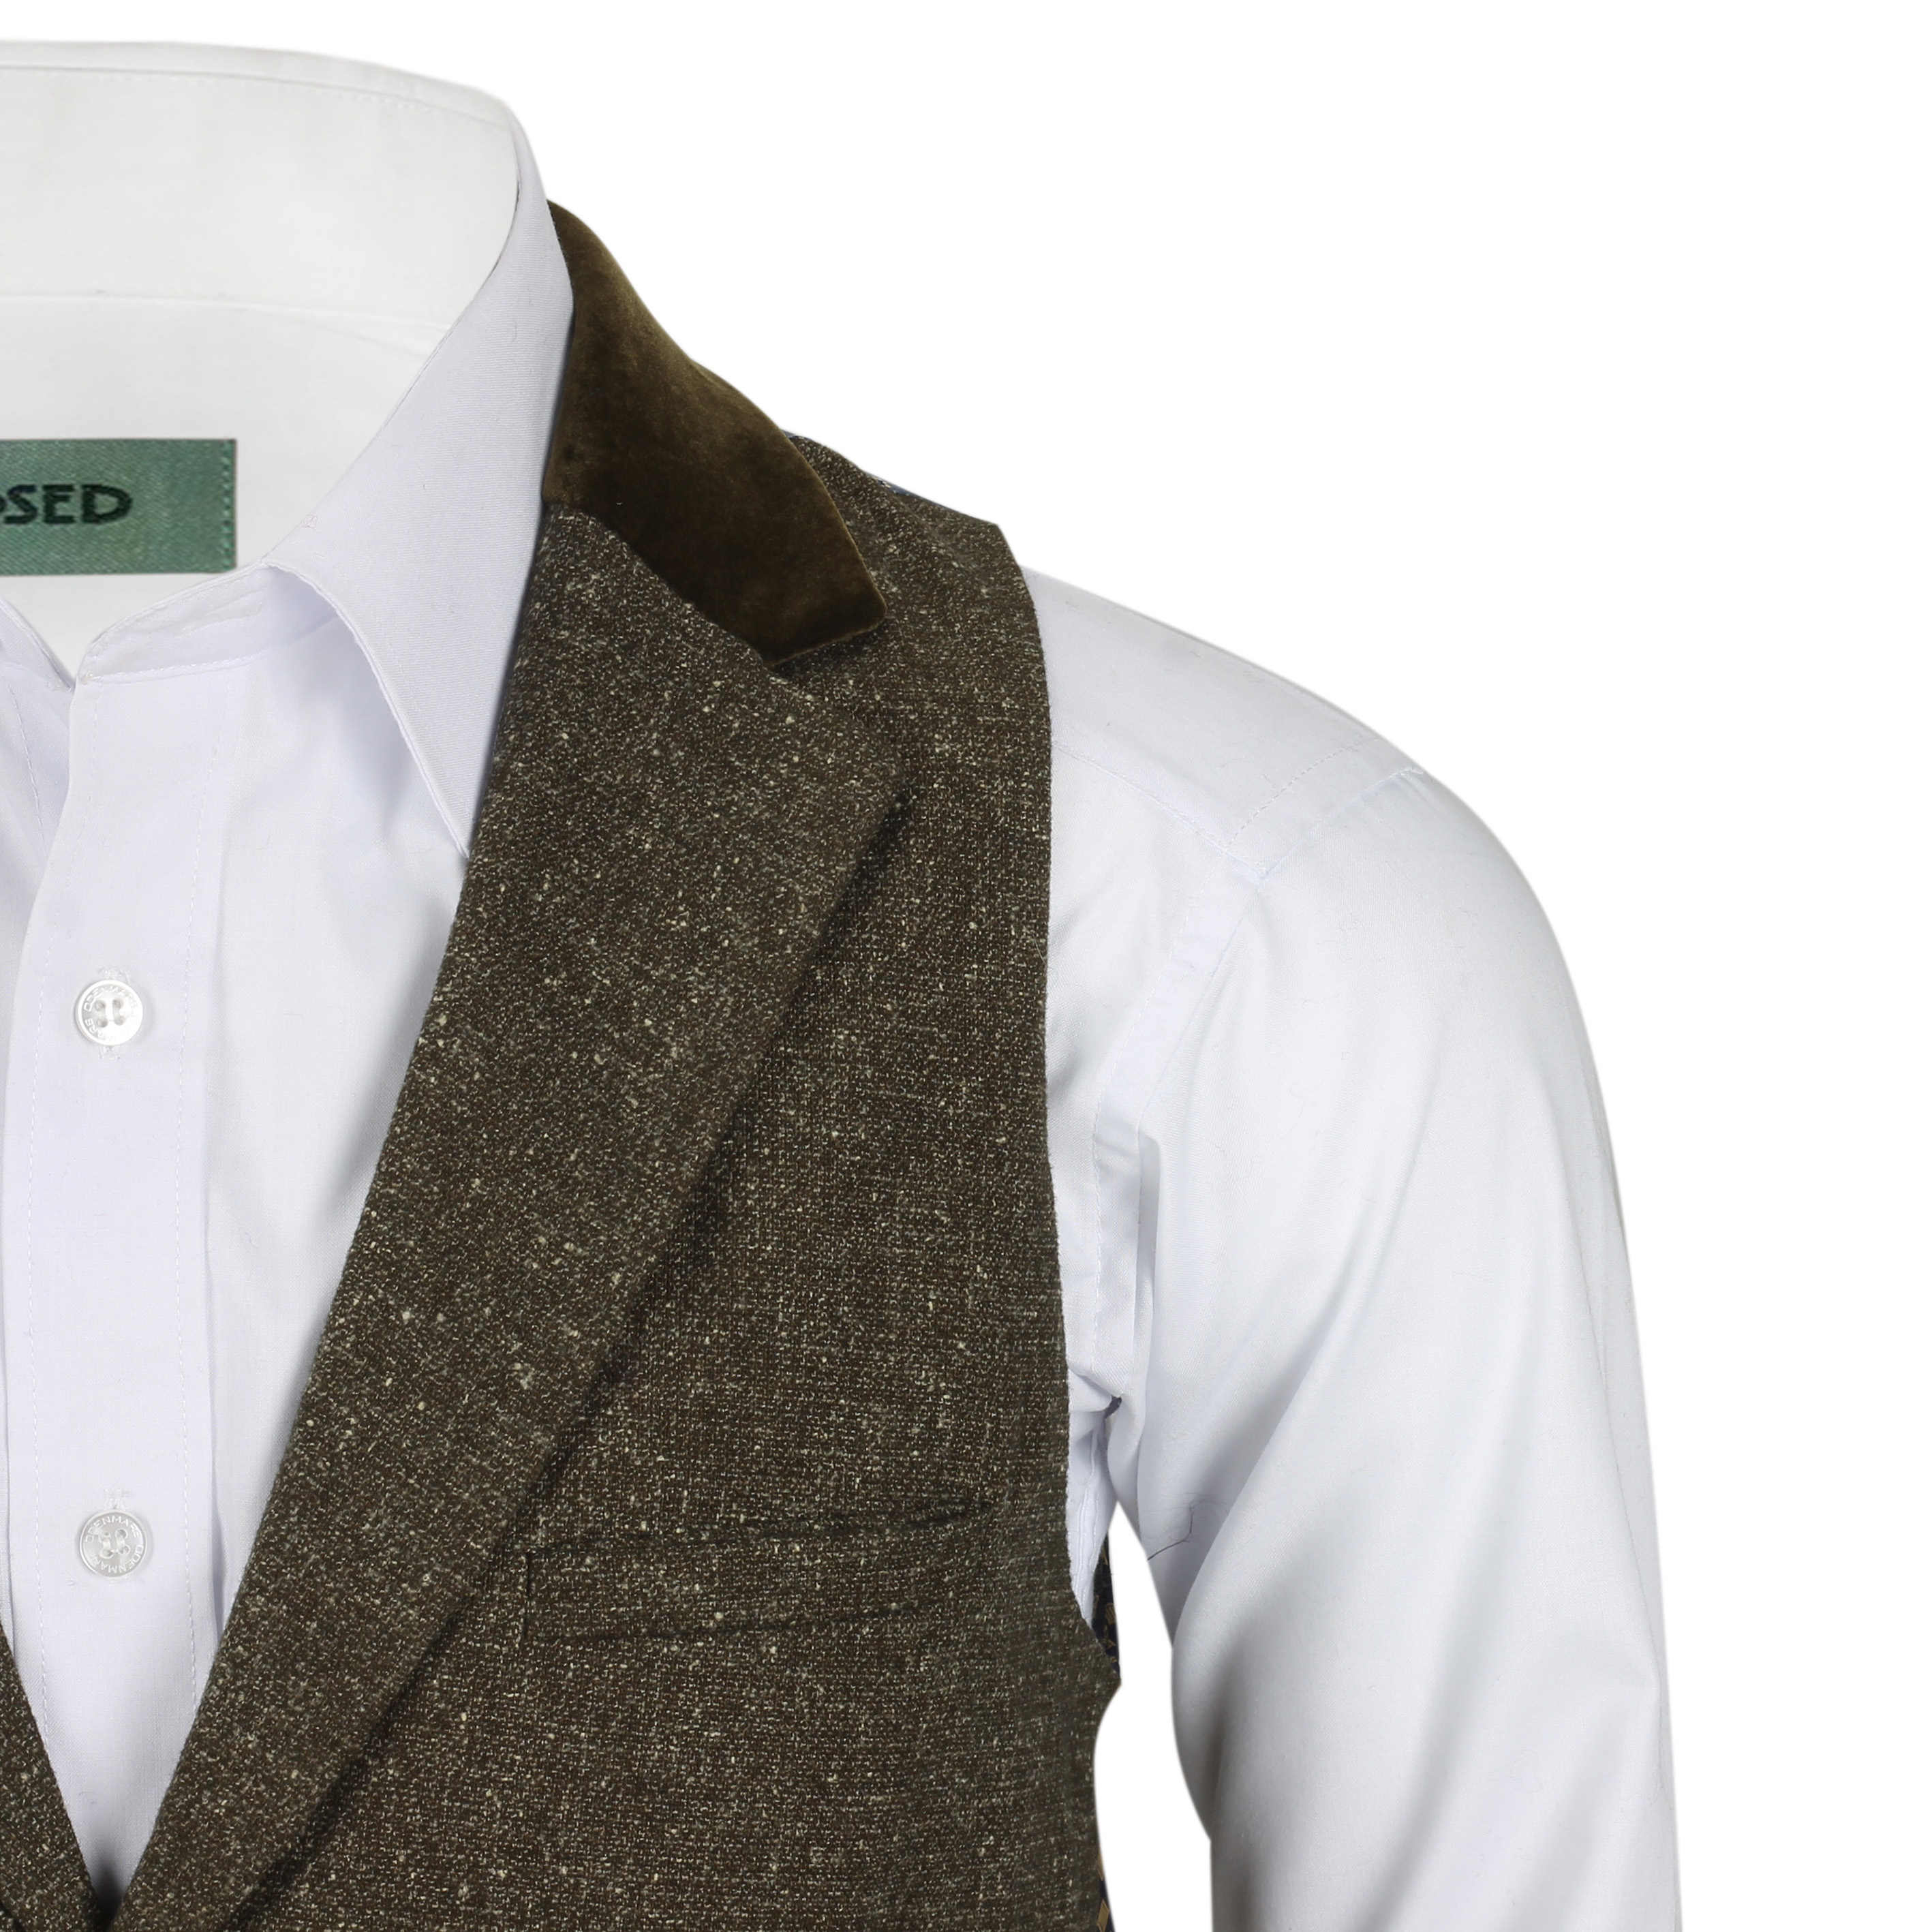 Mens Tweed Wool Waistcoat Vintage Velvet Collared Smart Casual Vest Brown Grey